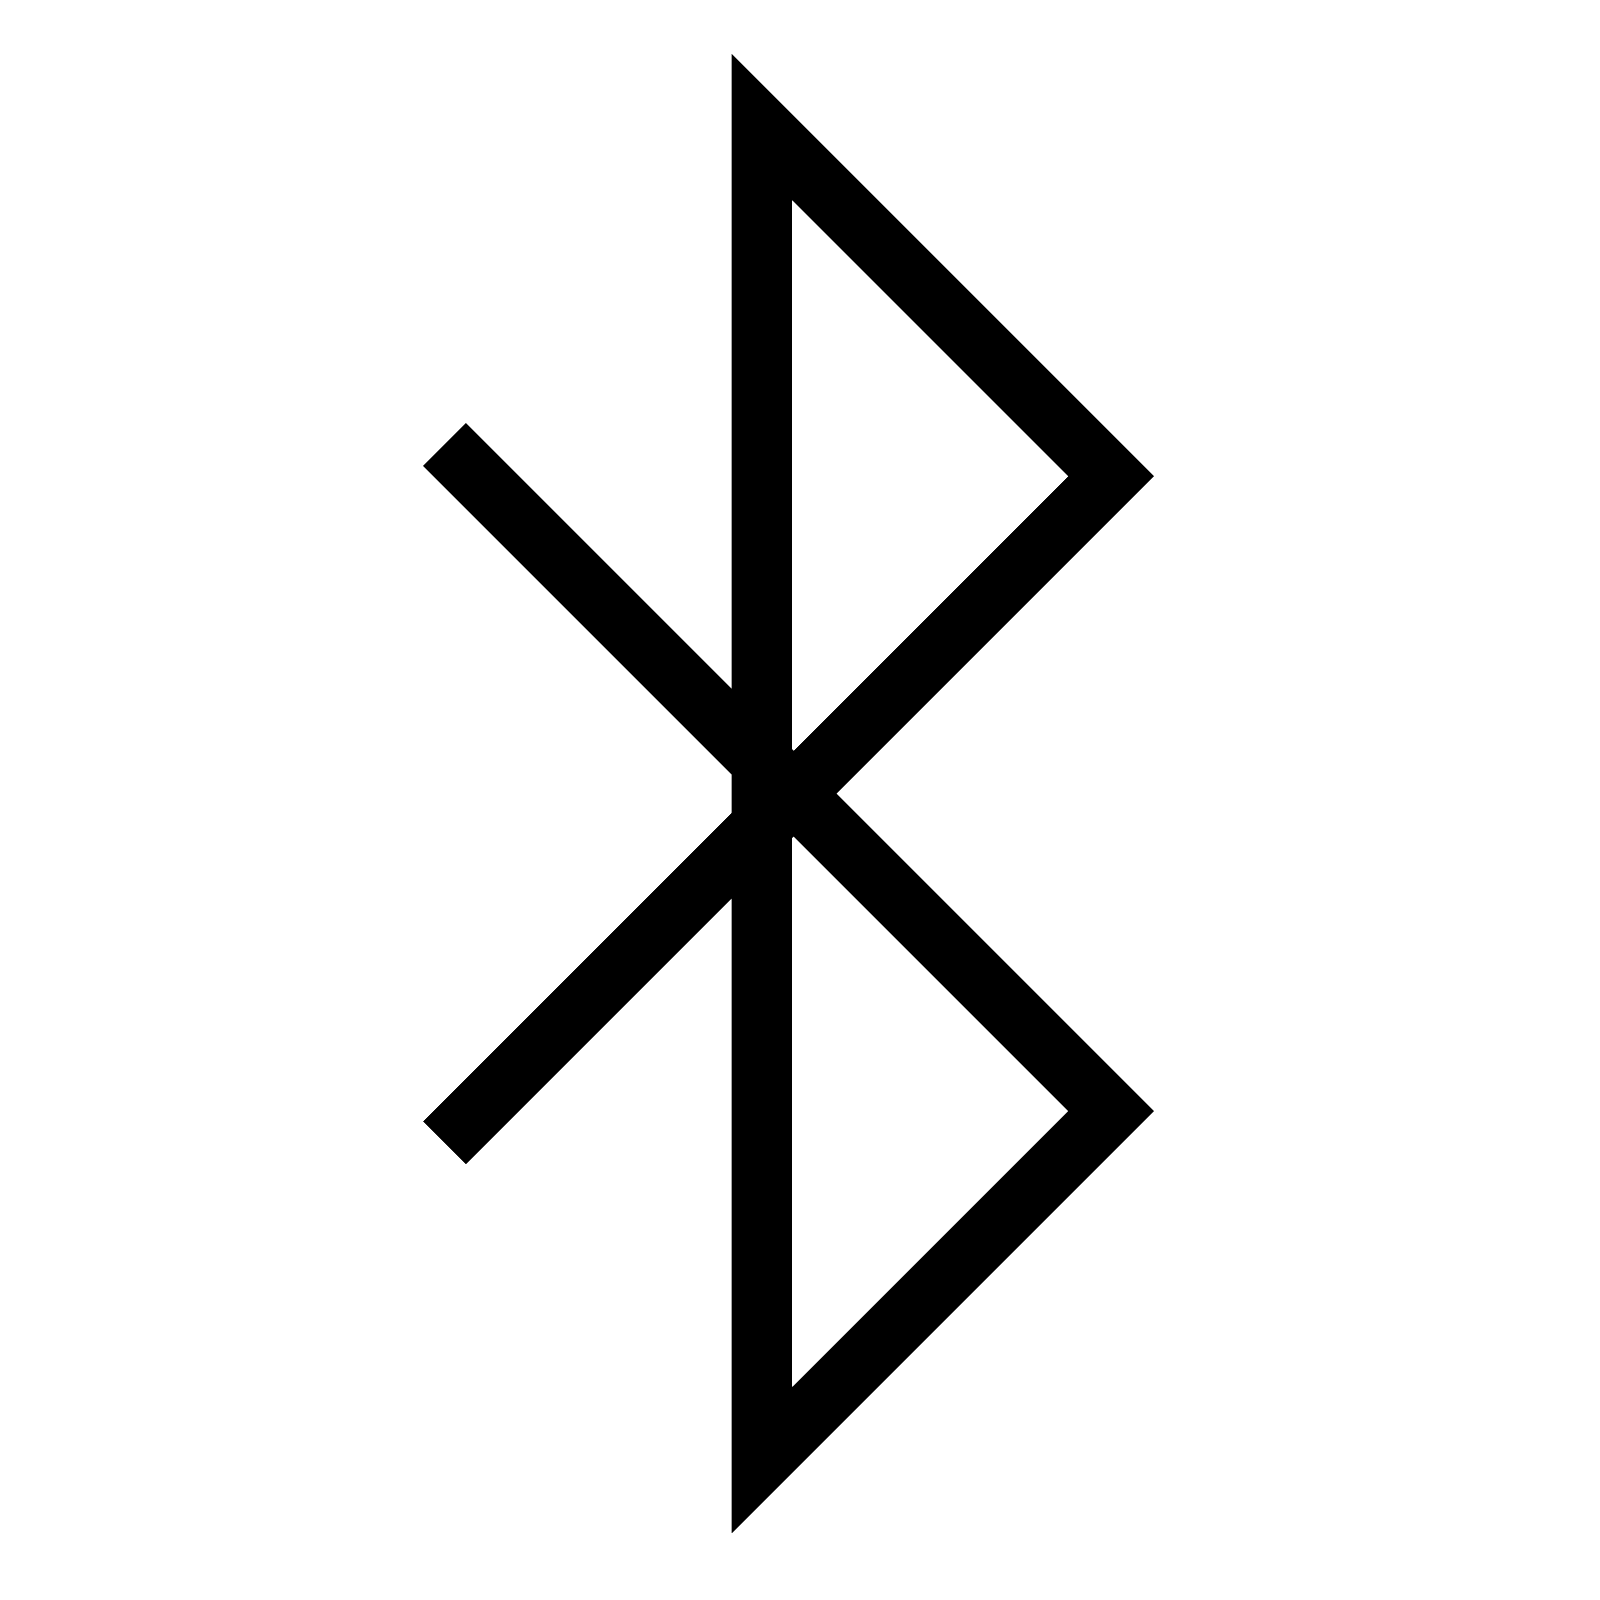 Bluetooth Logo - Bluetooth logo PNG image free download